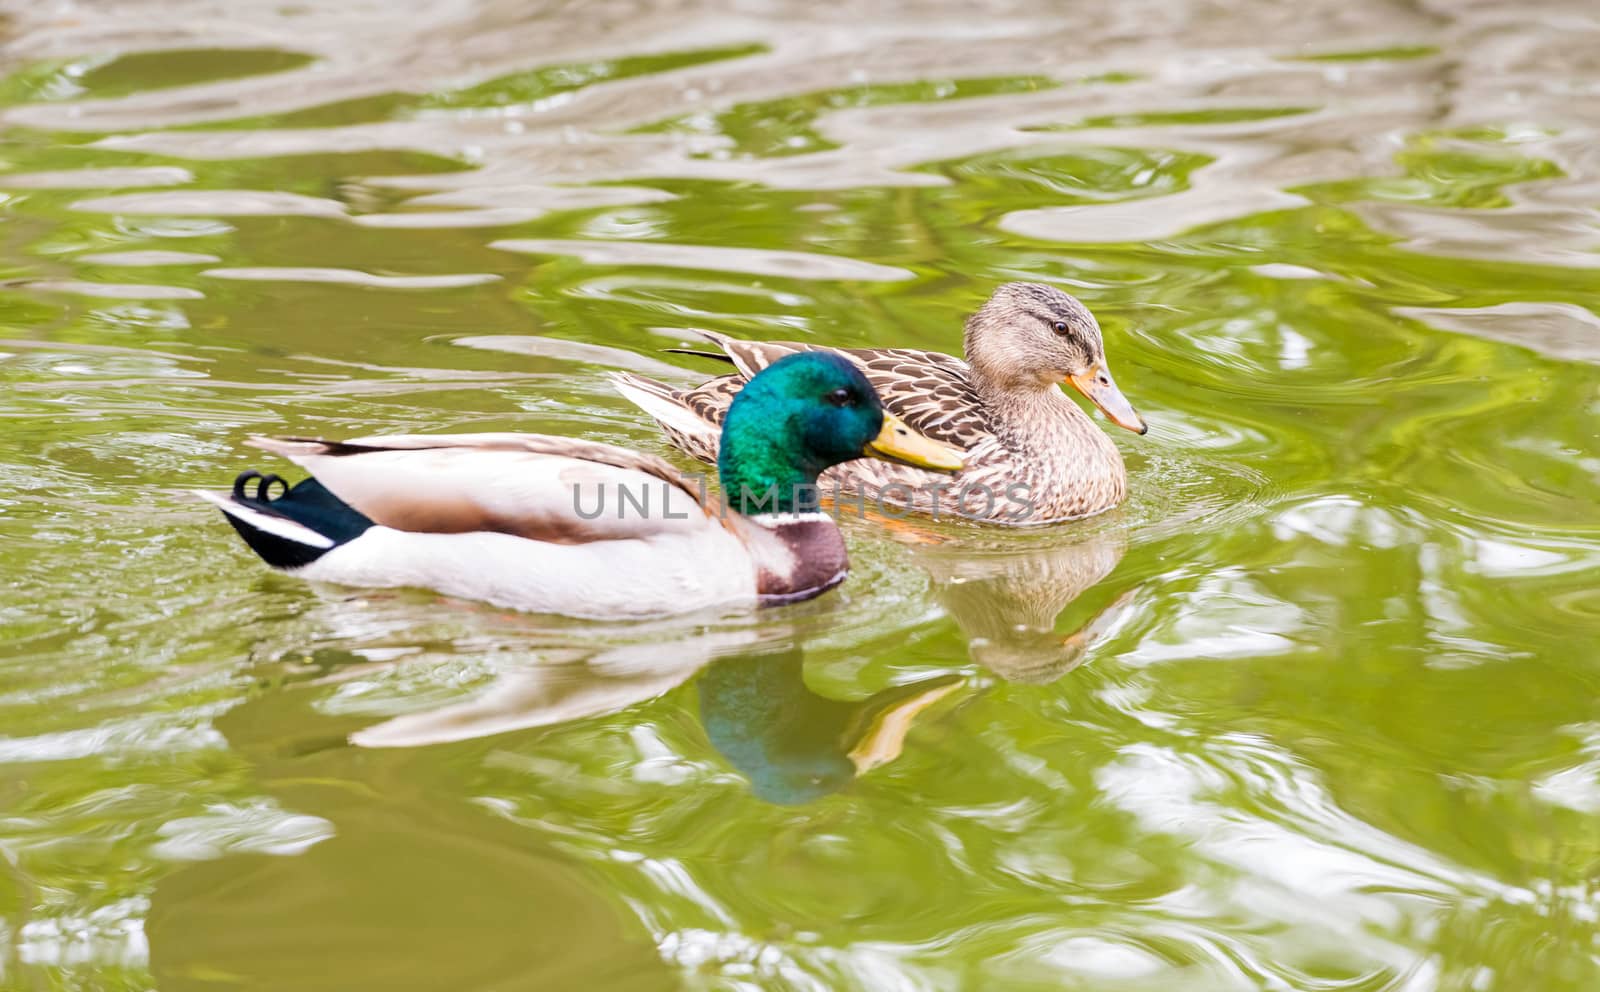 mallard ducks swimming in a lake by Marcus